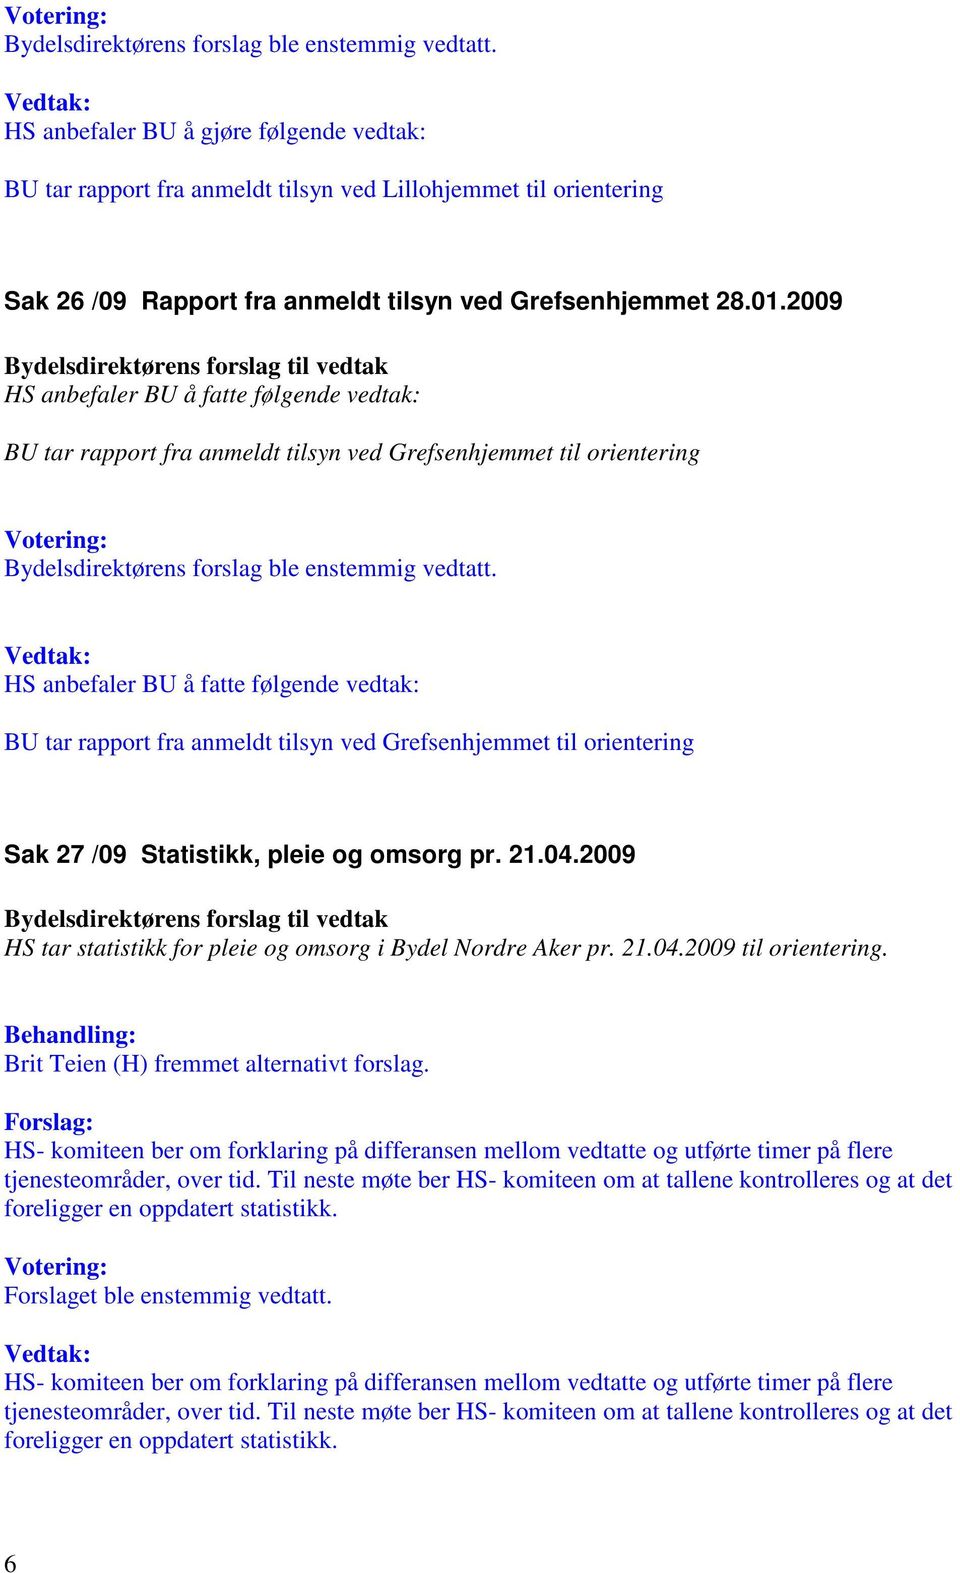 2009 HS tar statistikk for pleie og omsorg i Bydel Nordre Aker pr. 21.04.2009 til orientering. Brit Teien (H) fremmet alternativt forslag.